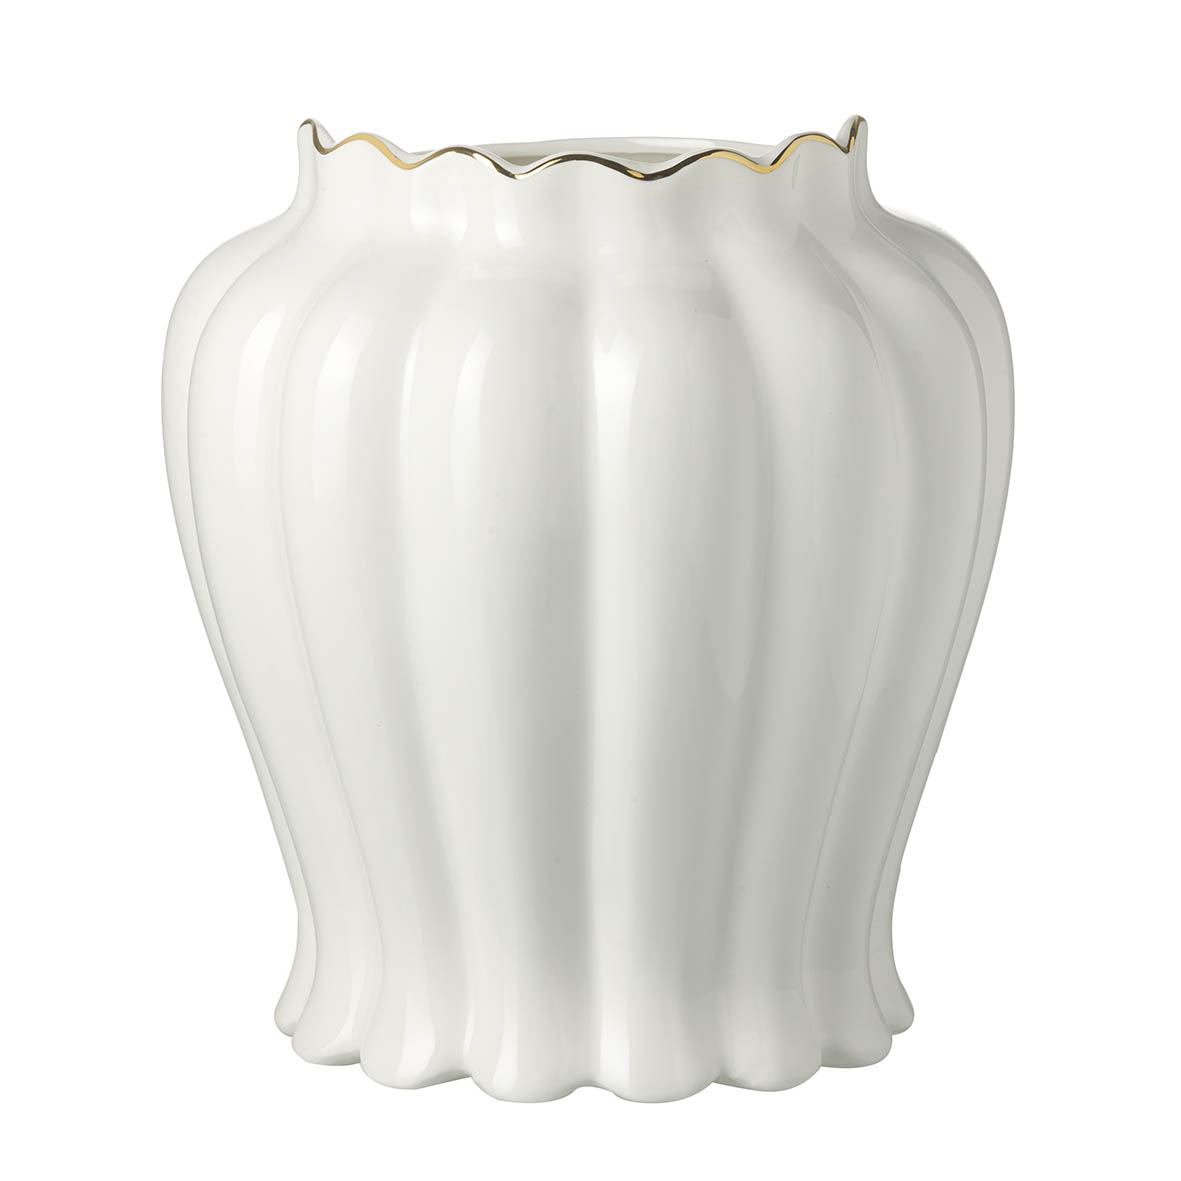 Vase Ø23x25 cm GAEA ceramics white